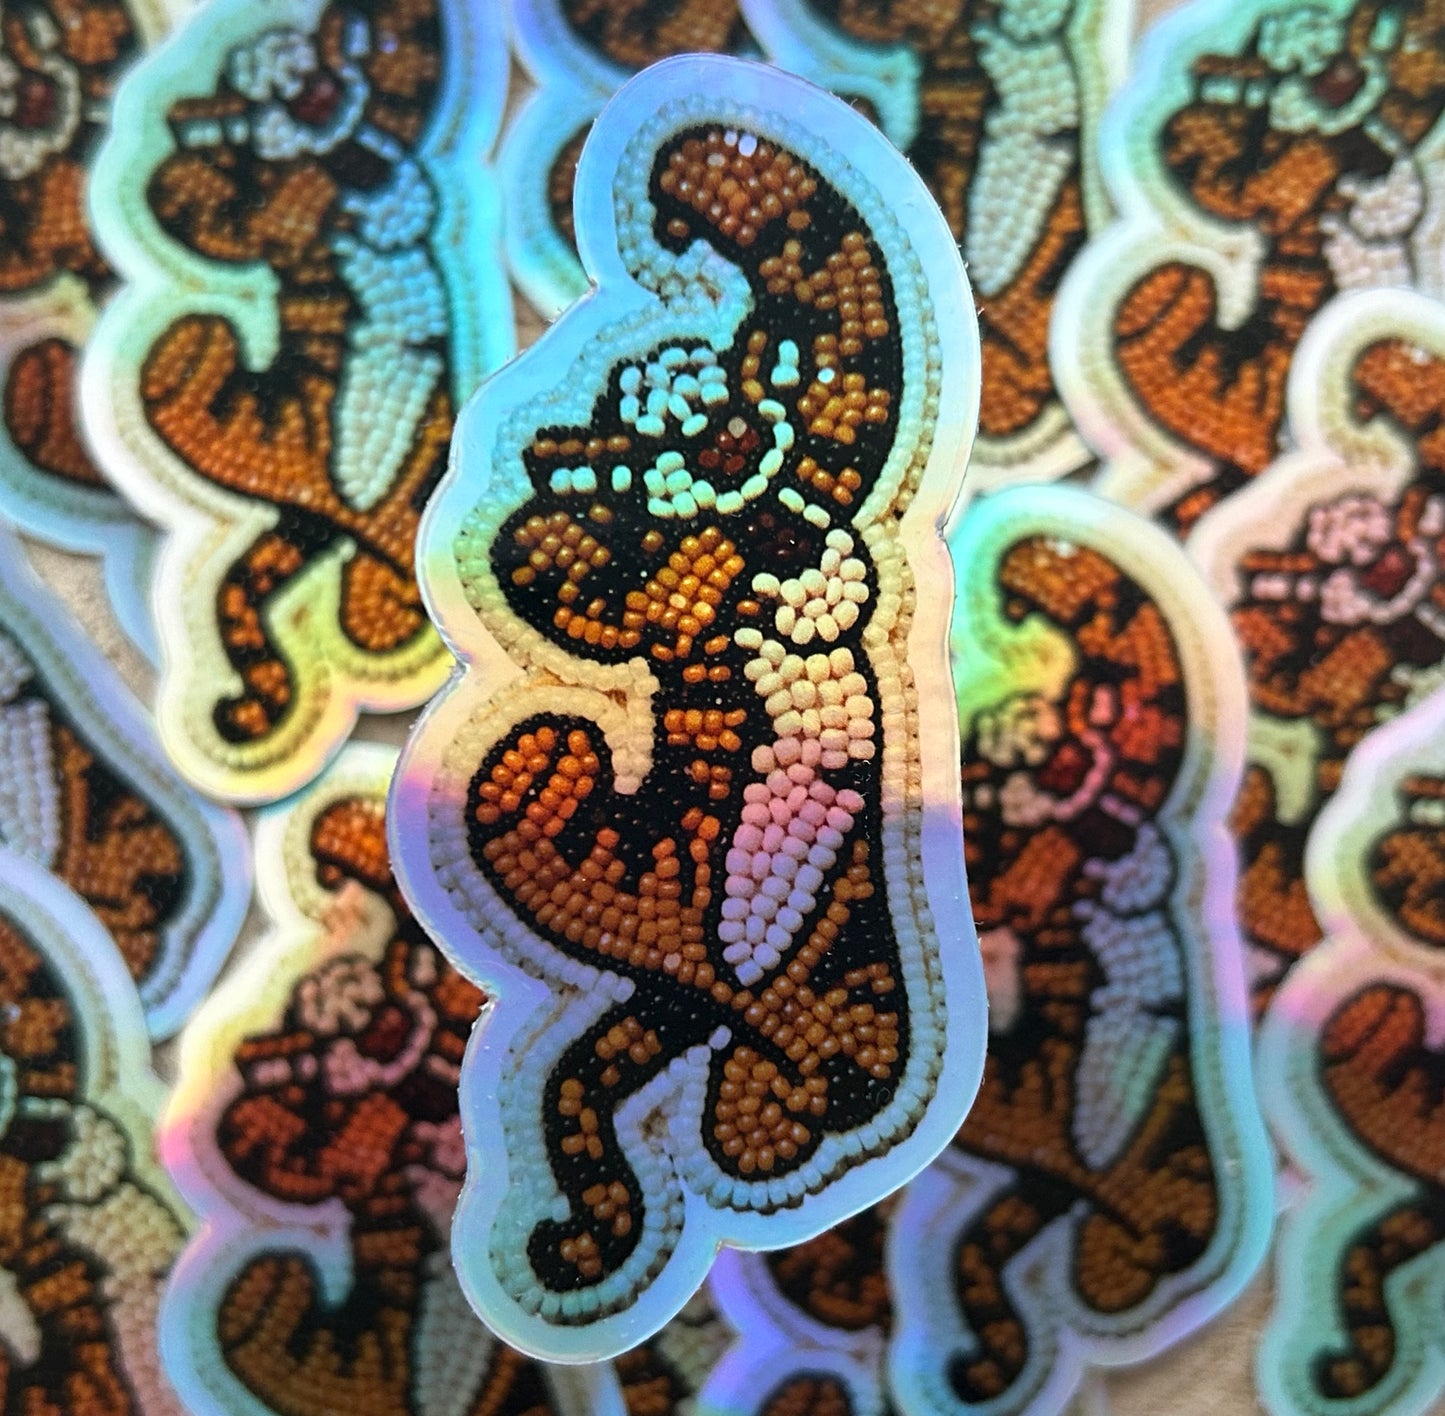 Tigger holographic sticker